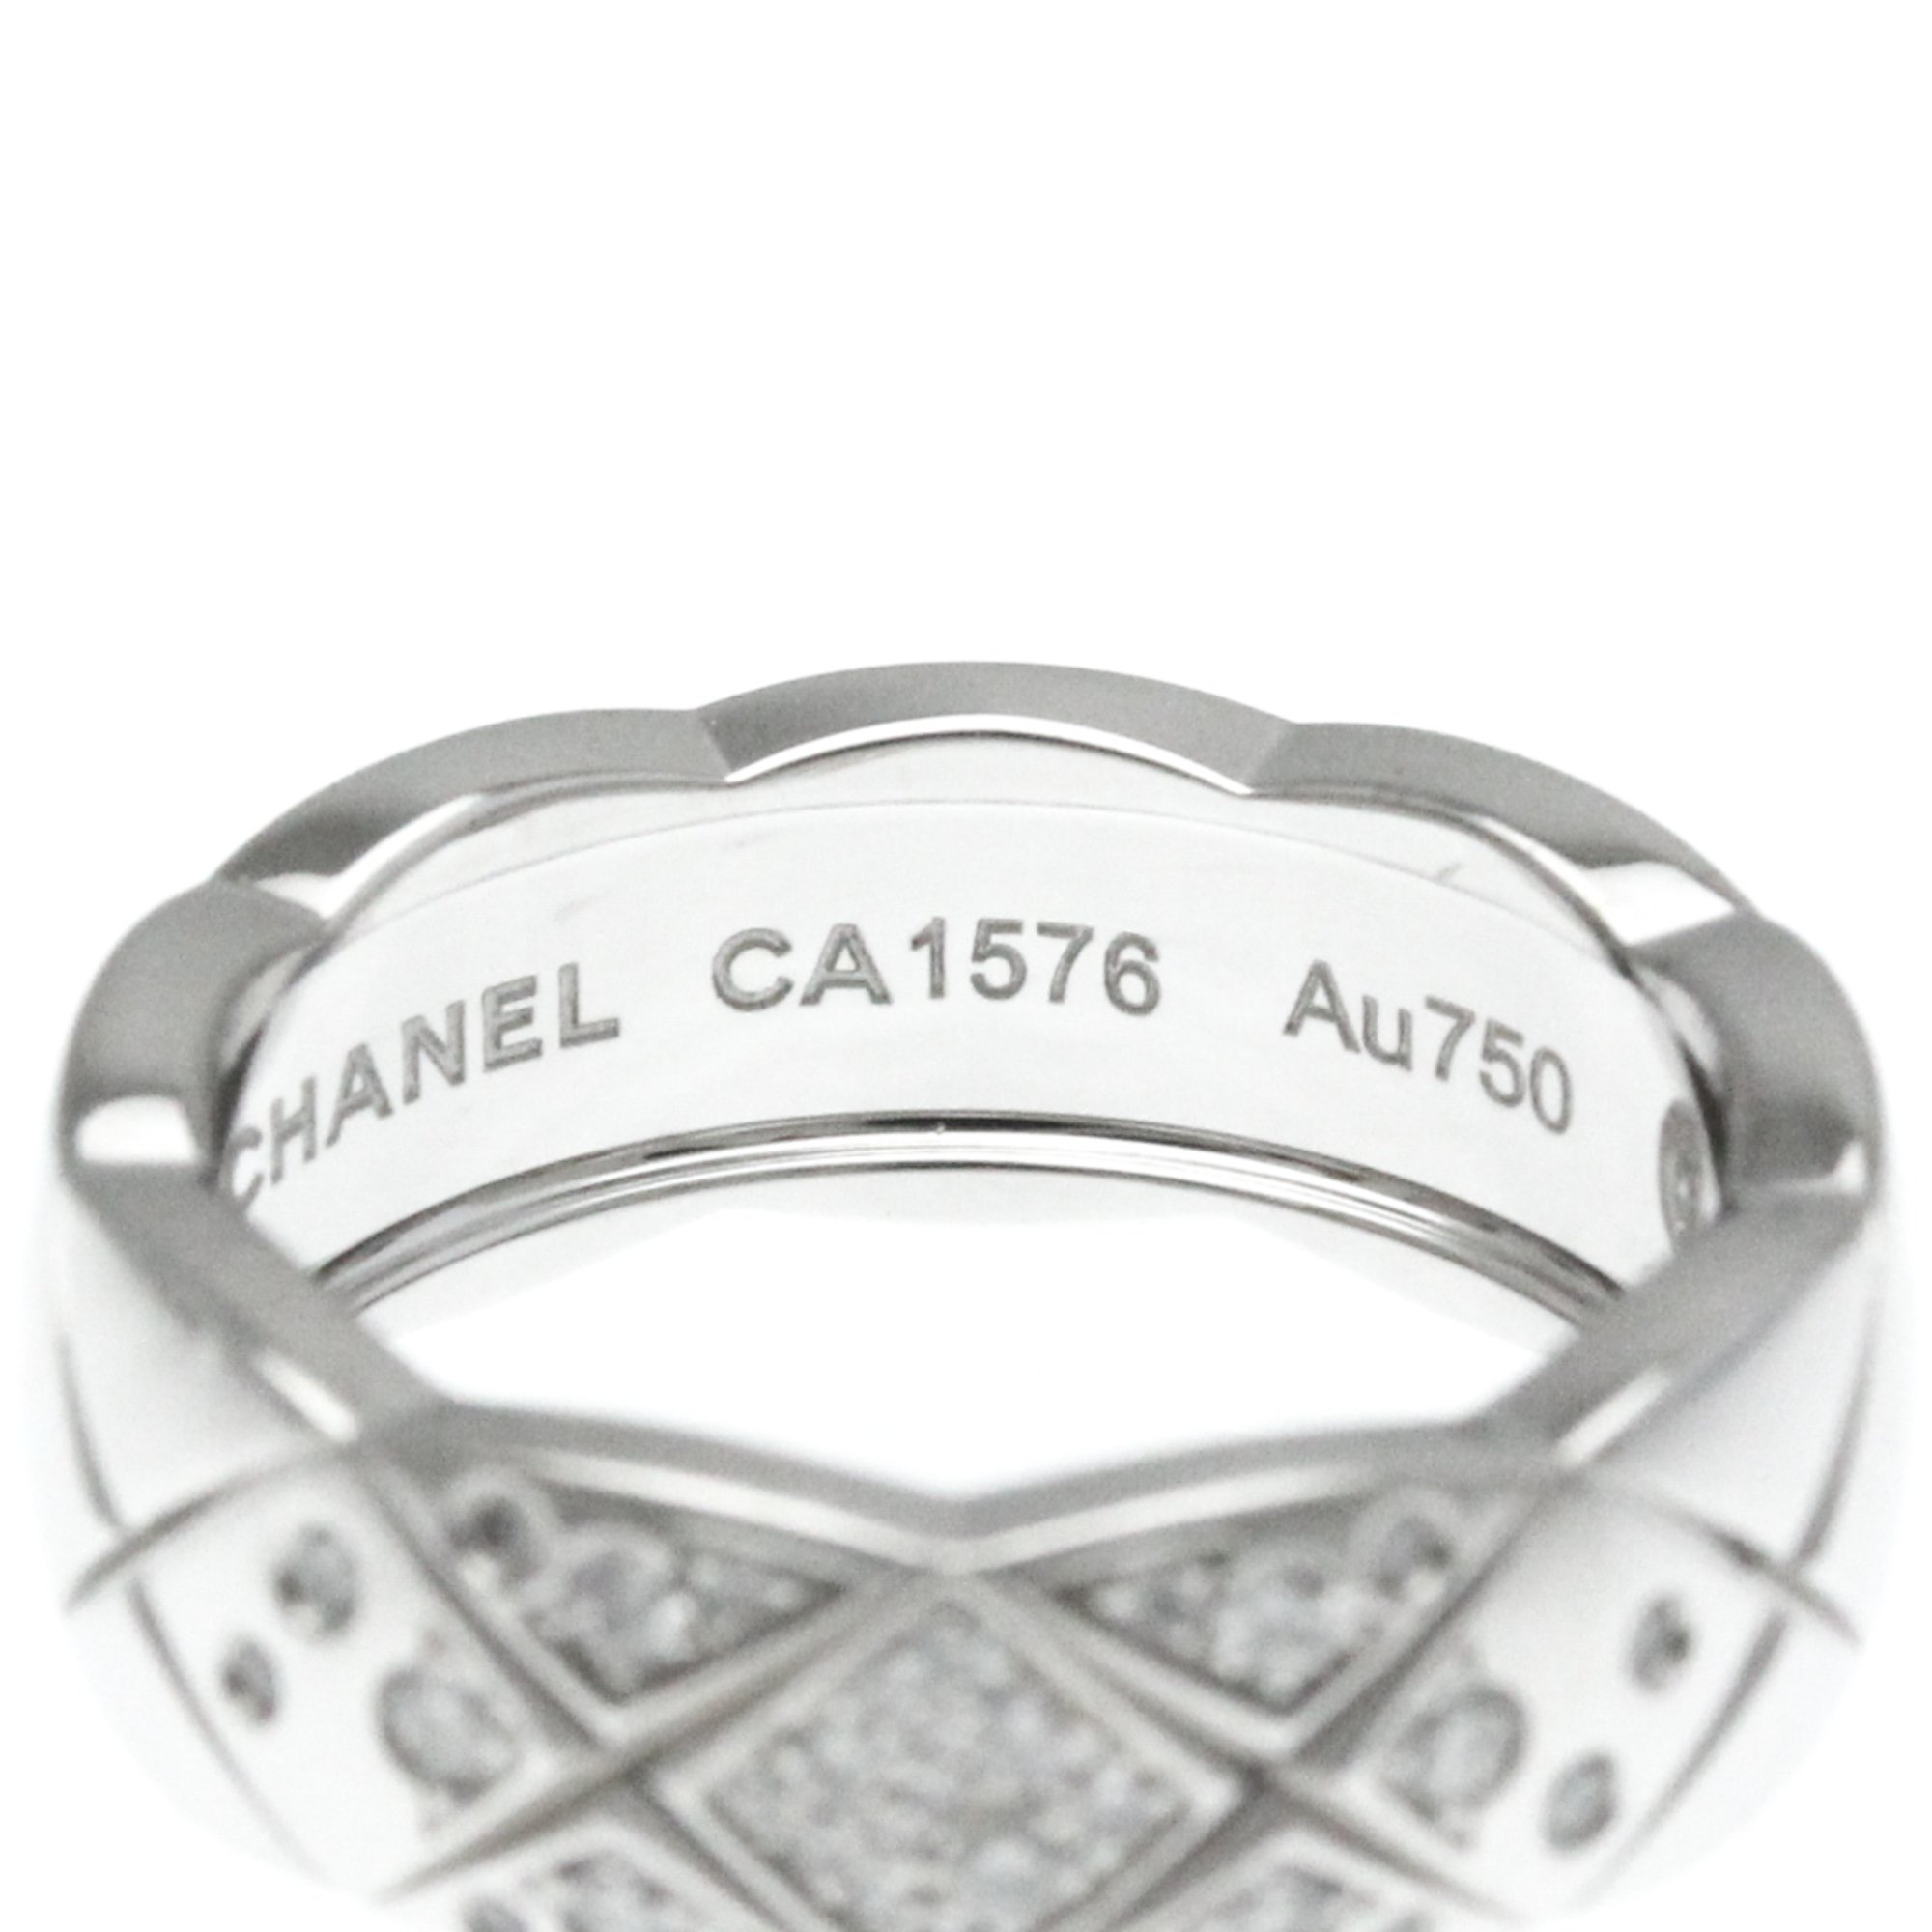 シャネル(Chanel) ココクラッシュリング ミディアムサイズ ダイヤモンド J10865 K18ホワイトゴールド(K18WG) ファッション ダイヤモンド バンドリング カラット/0.18 シルバー